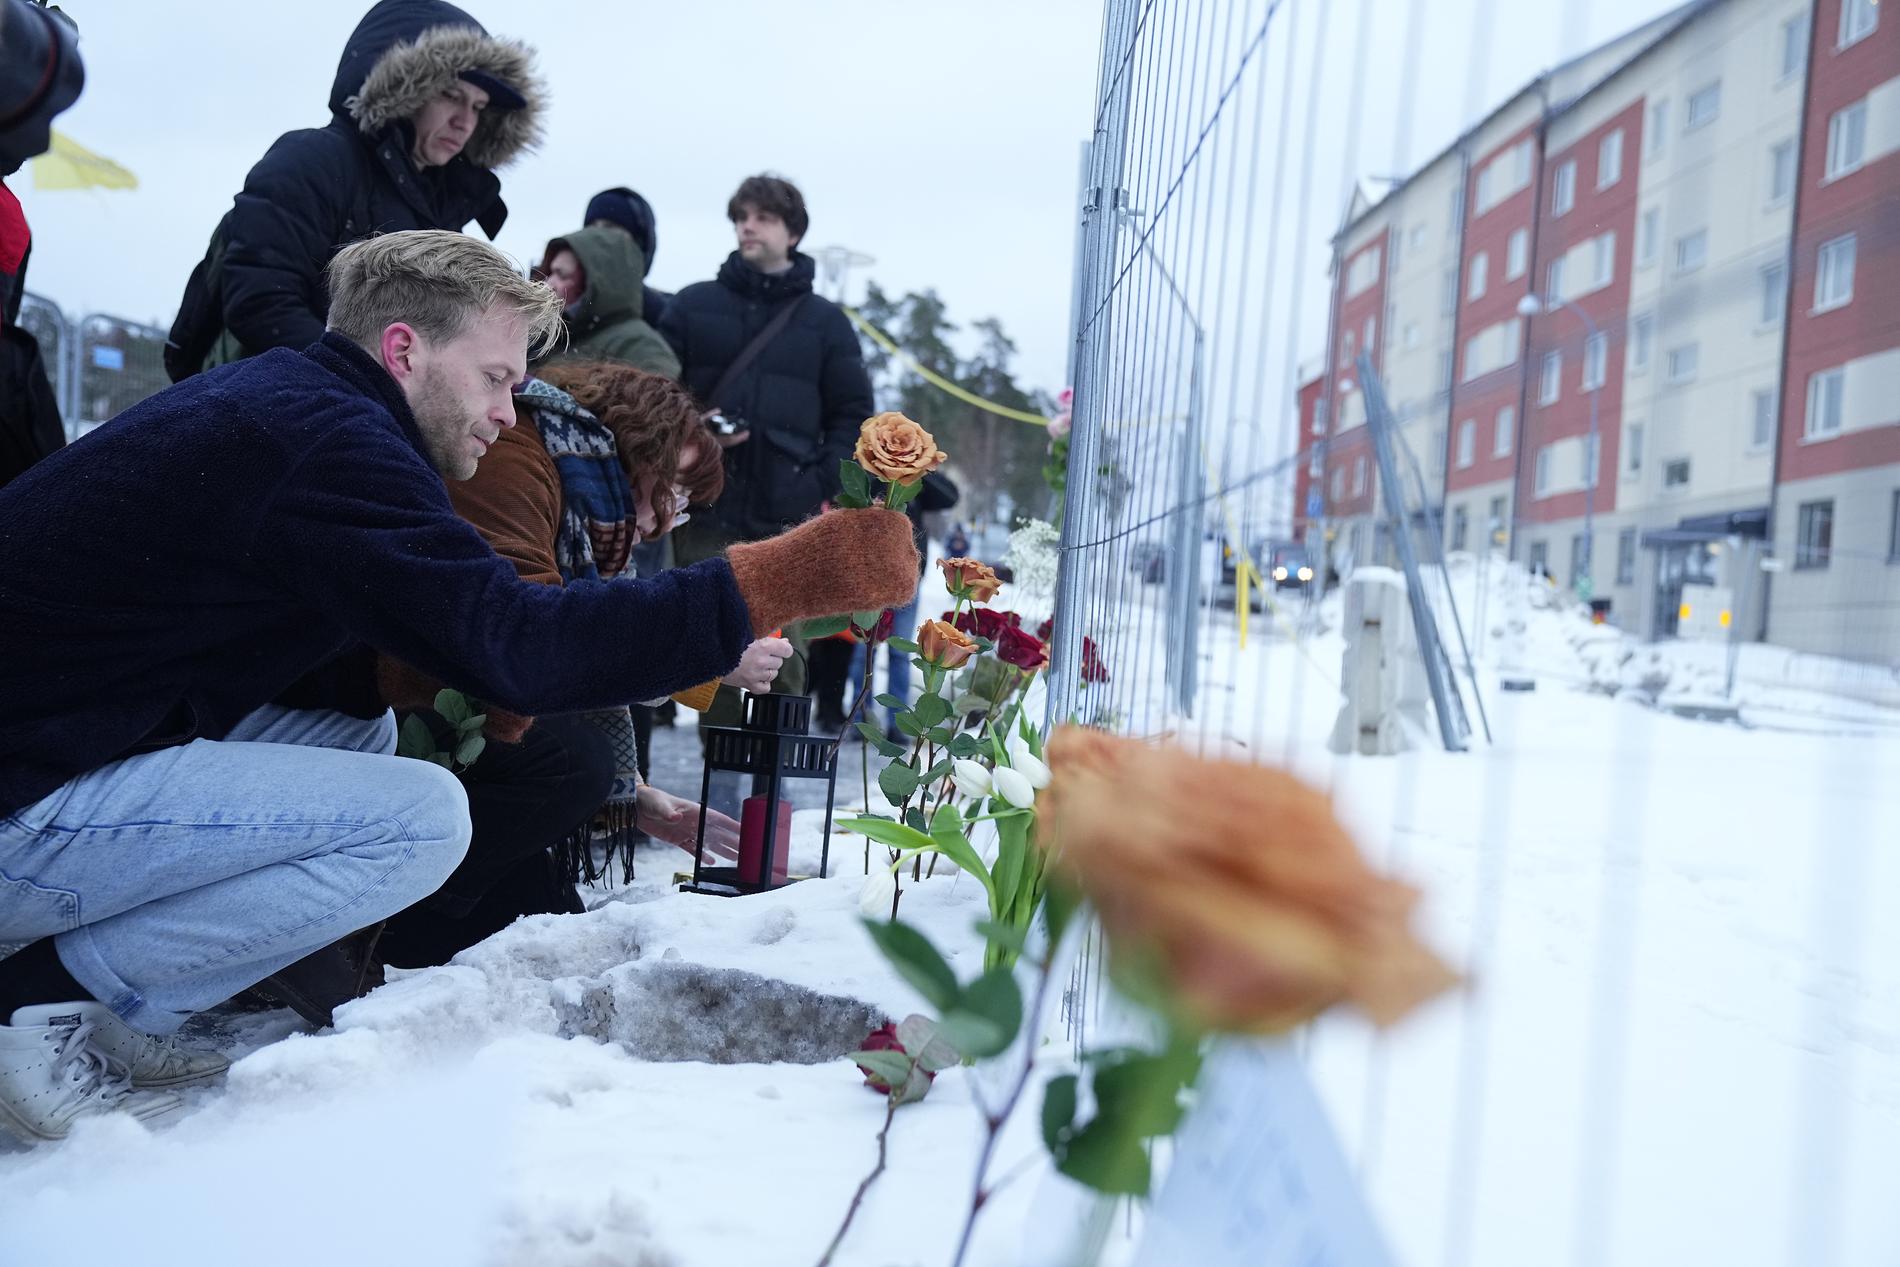 Många har tagit sig till olycksplatsen i Sundbyberg för att tända ljus och lämna blommor för de döda. 